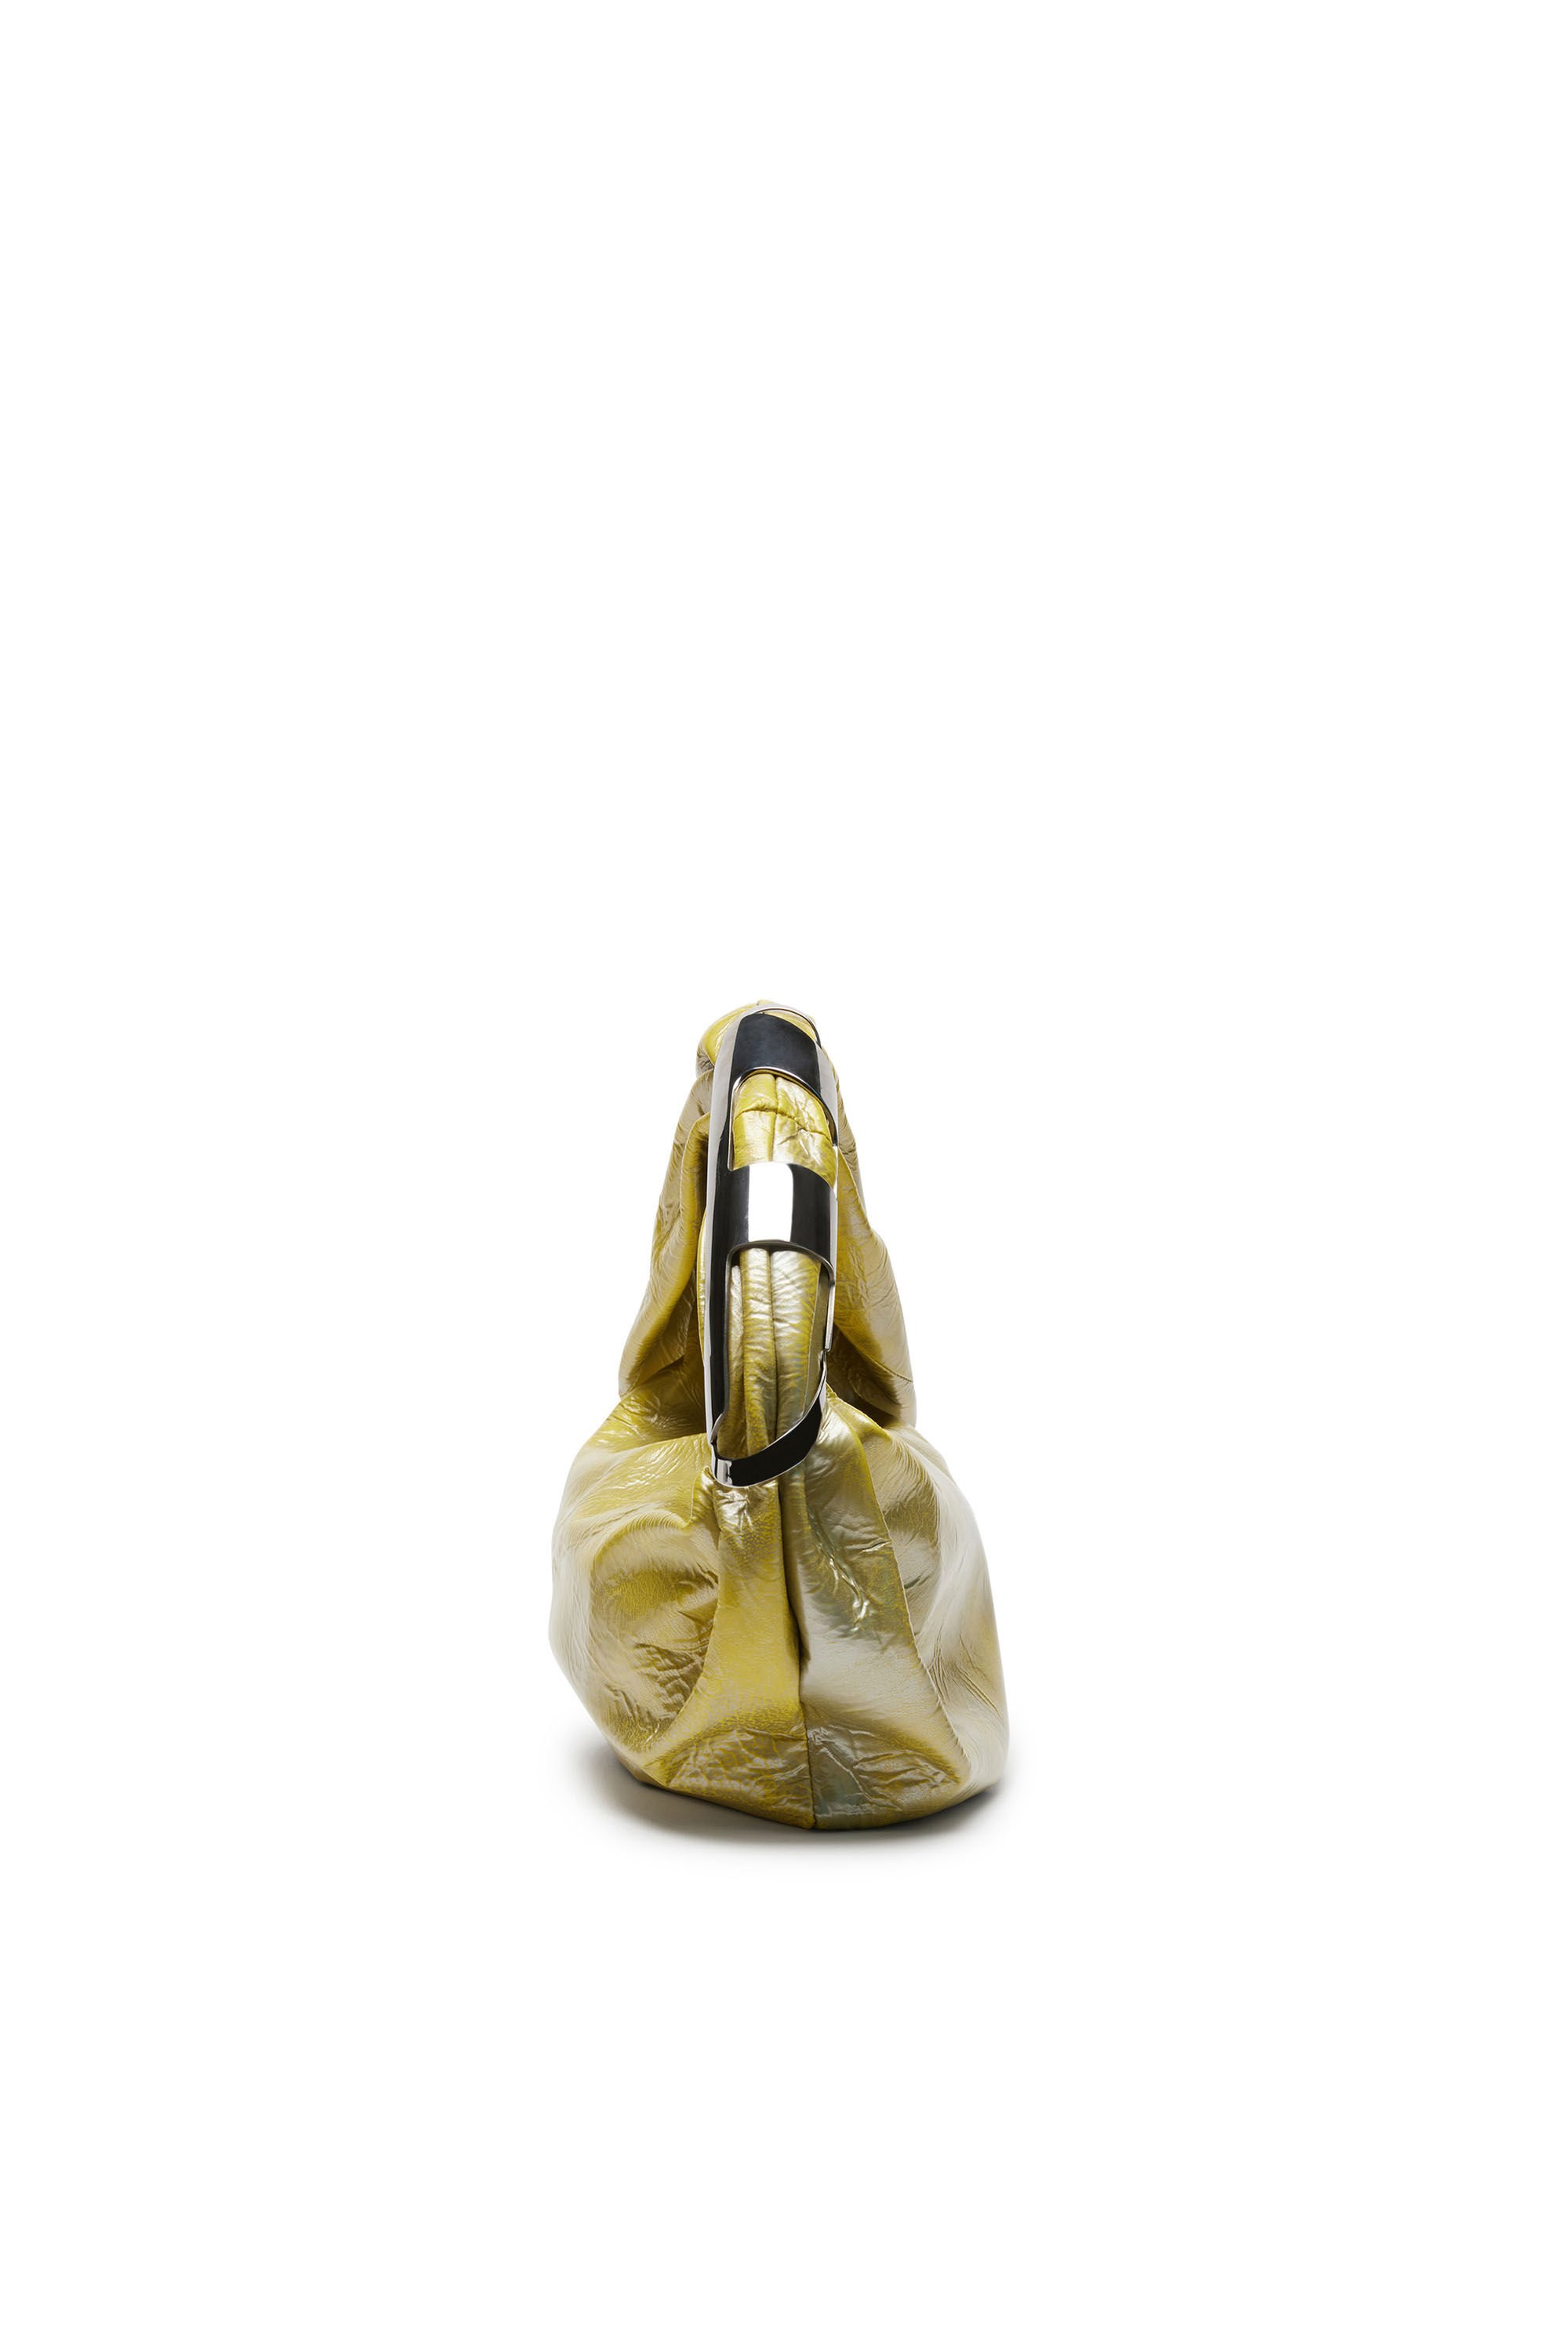 Diesel - GRAB-D HOBO S, Woman Grab-D S-Hobo bag in metallic leather in Yellow - Image 4